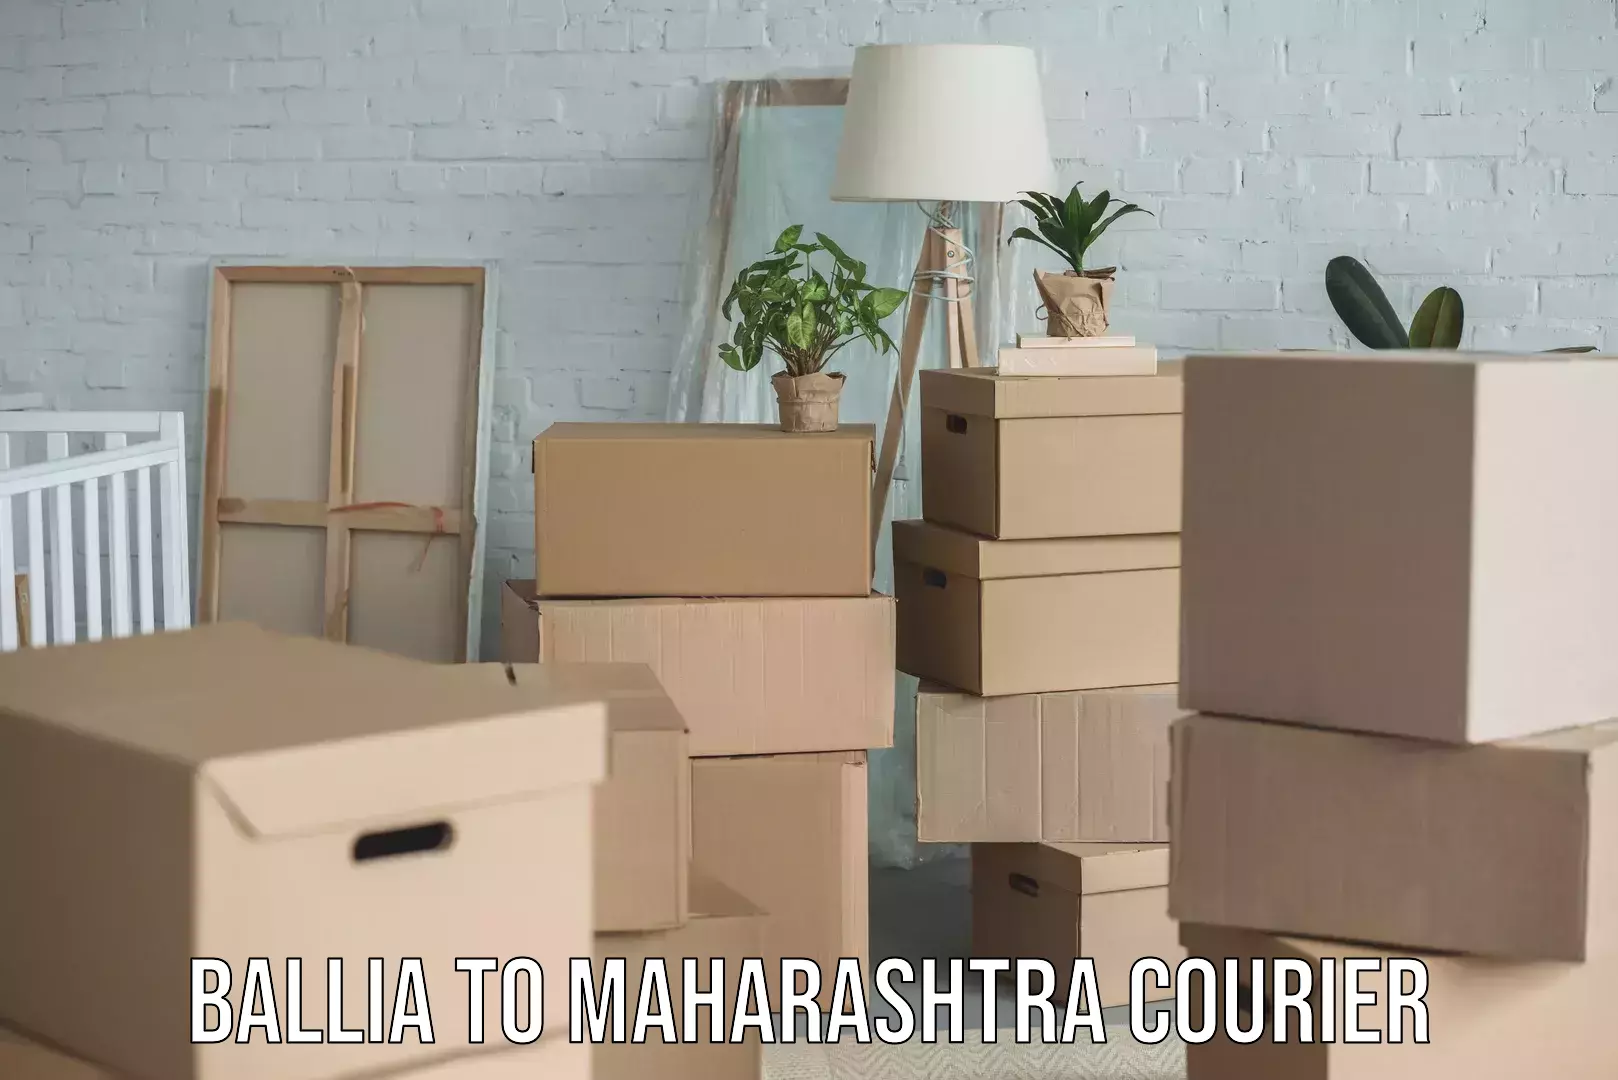 Door-to-door freight service Ballia to Maharashtra